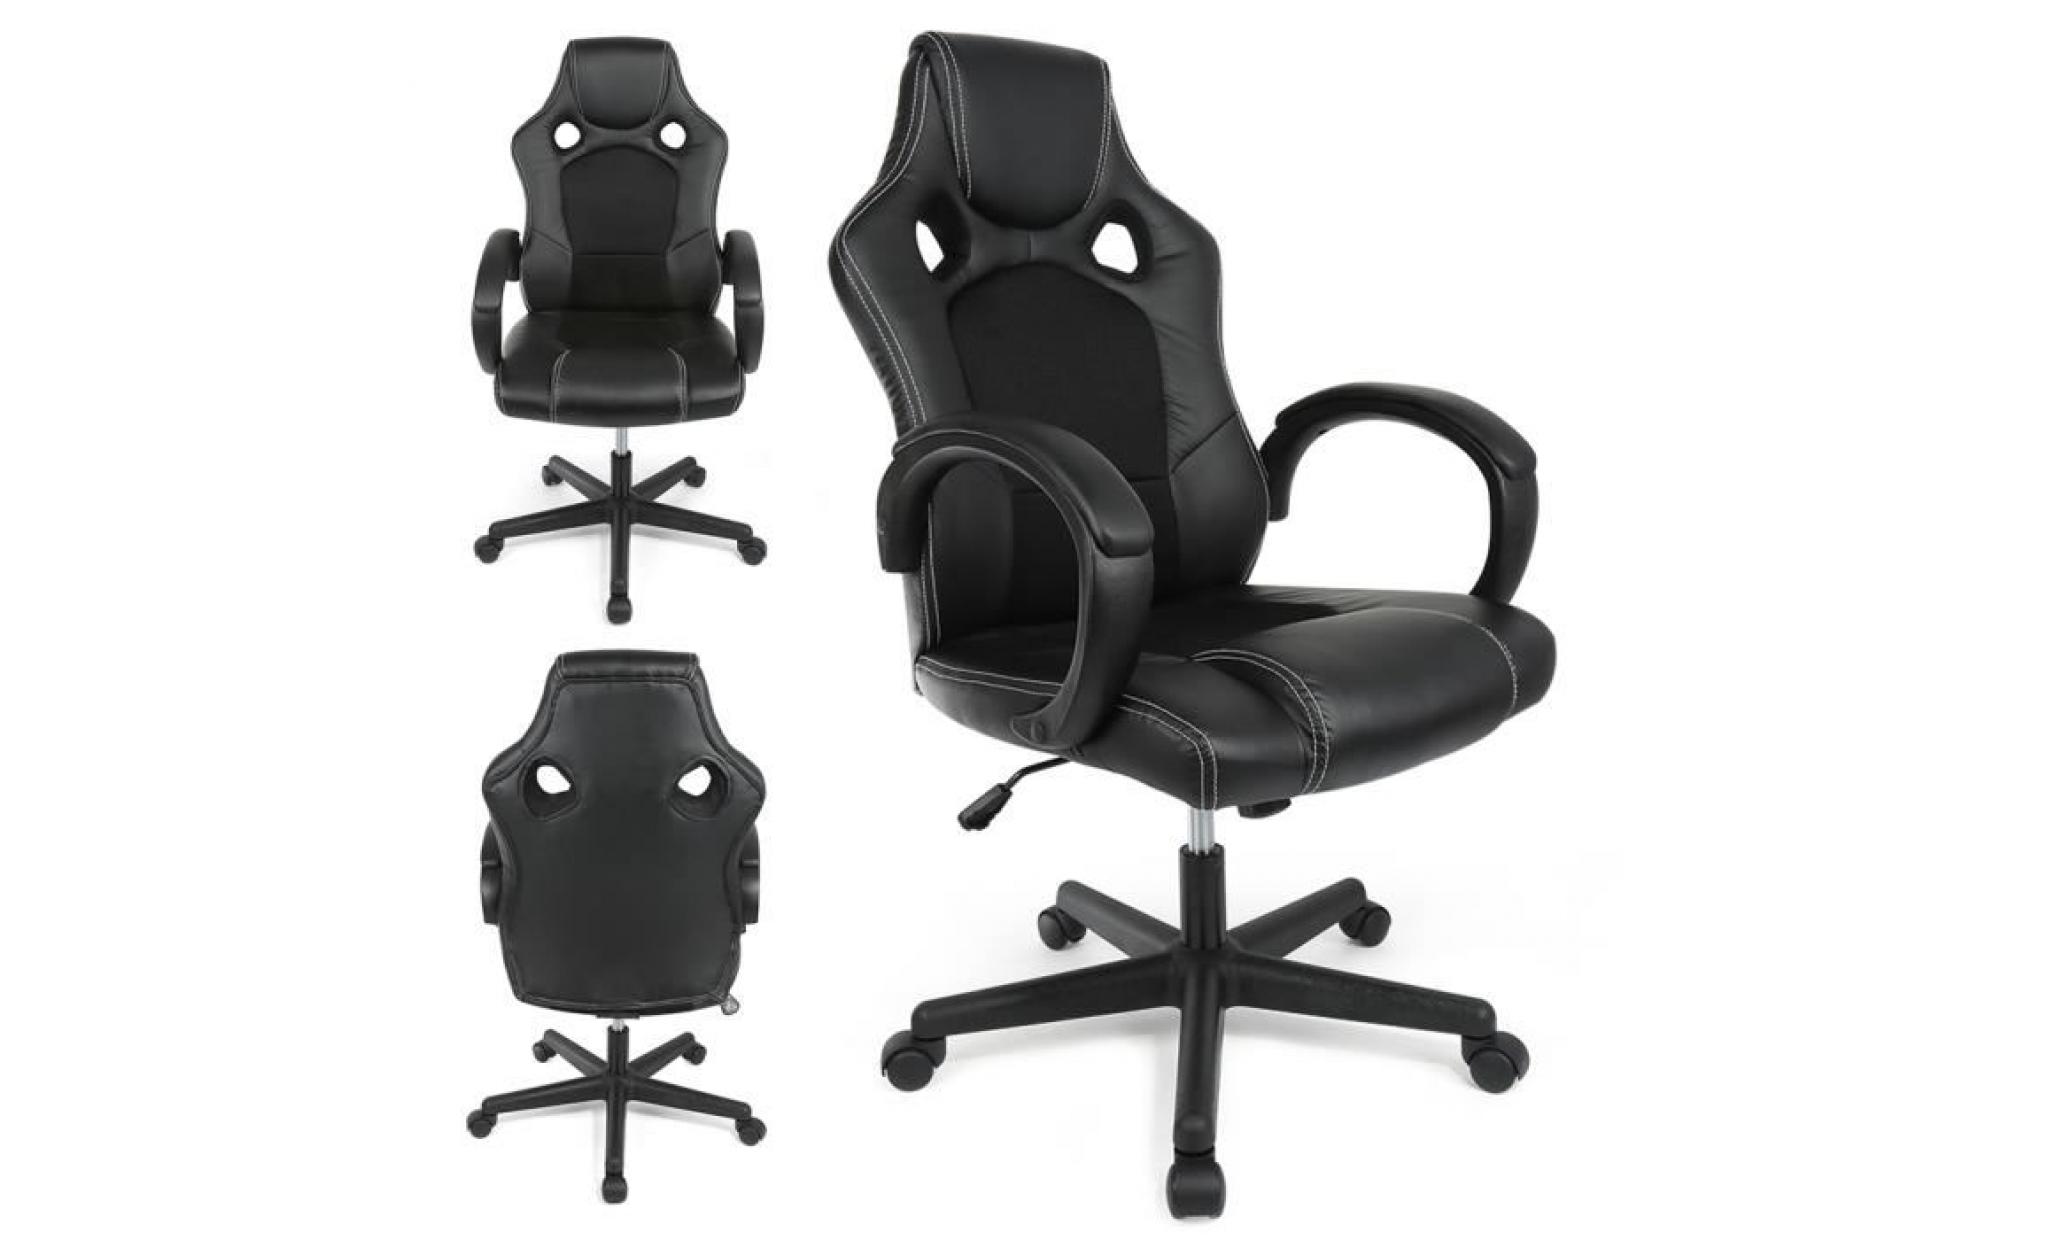 chaise gamer design baquet   simili noir   style contemporain   fauteuil de bureau siège racing chair noir